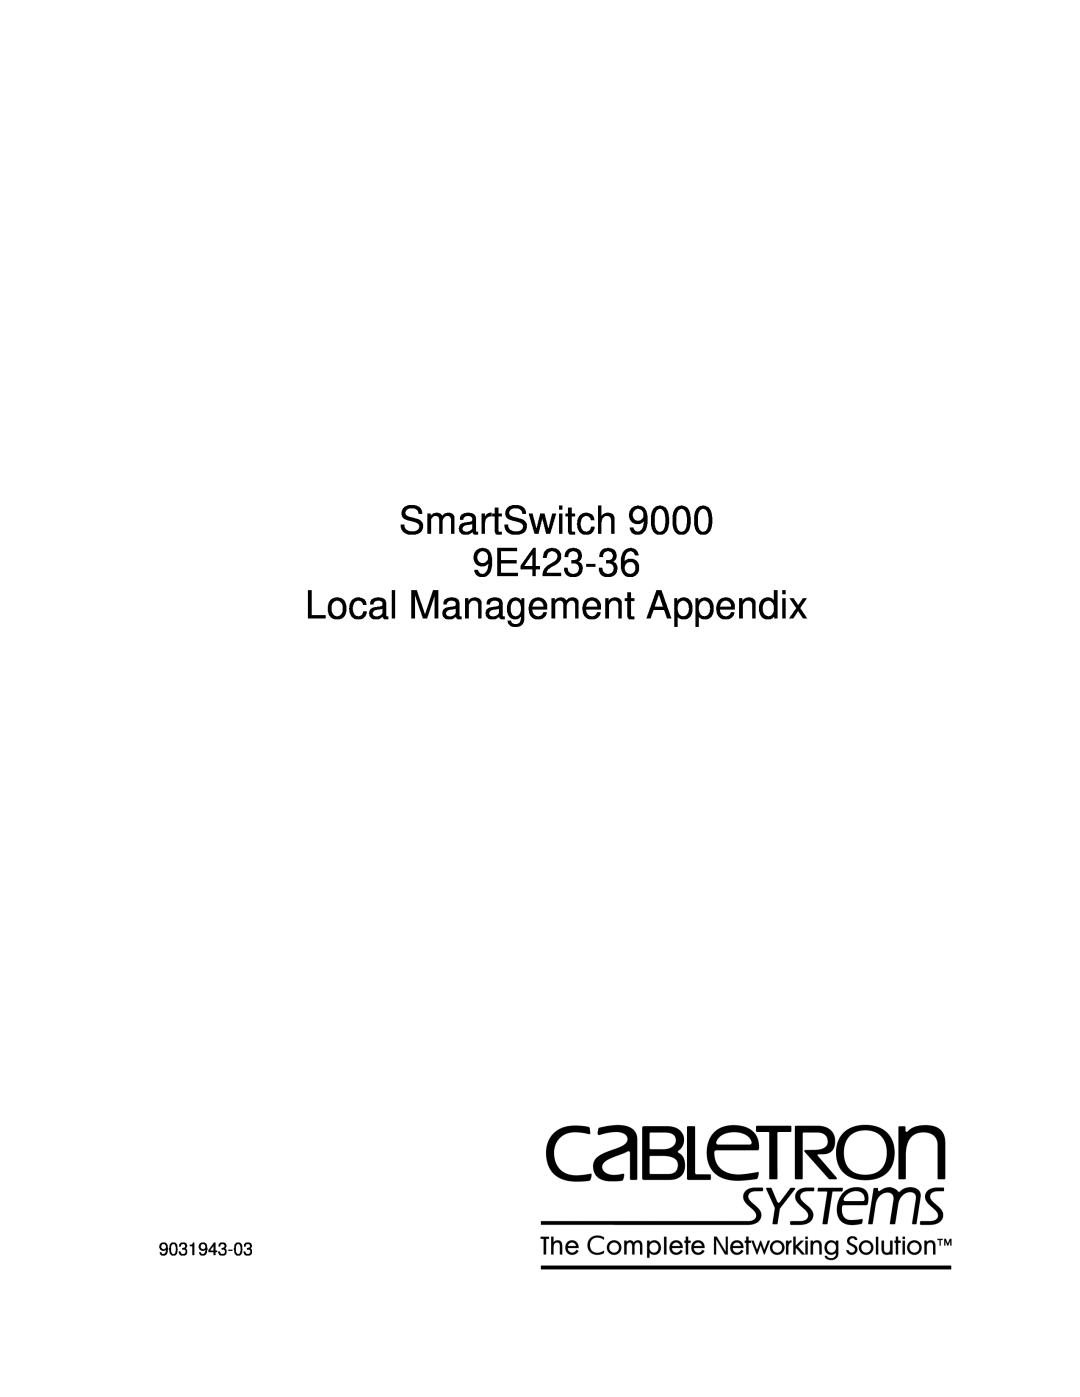 Cabletron Systems appendix SmartSwitch 9E423-36 Local Management Appendix, 9031943-03 